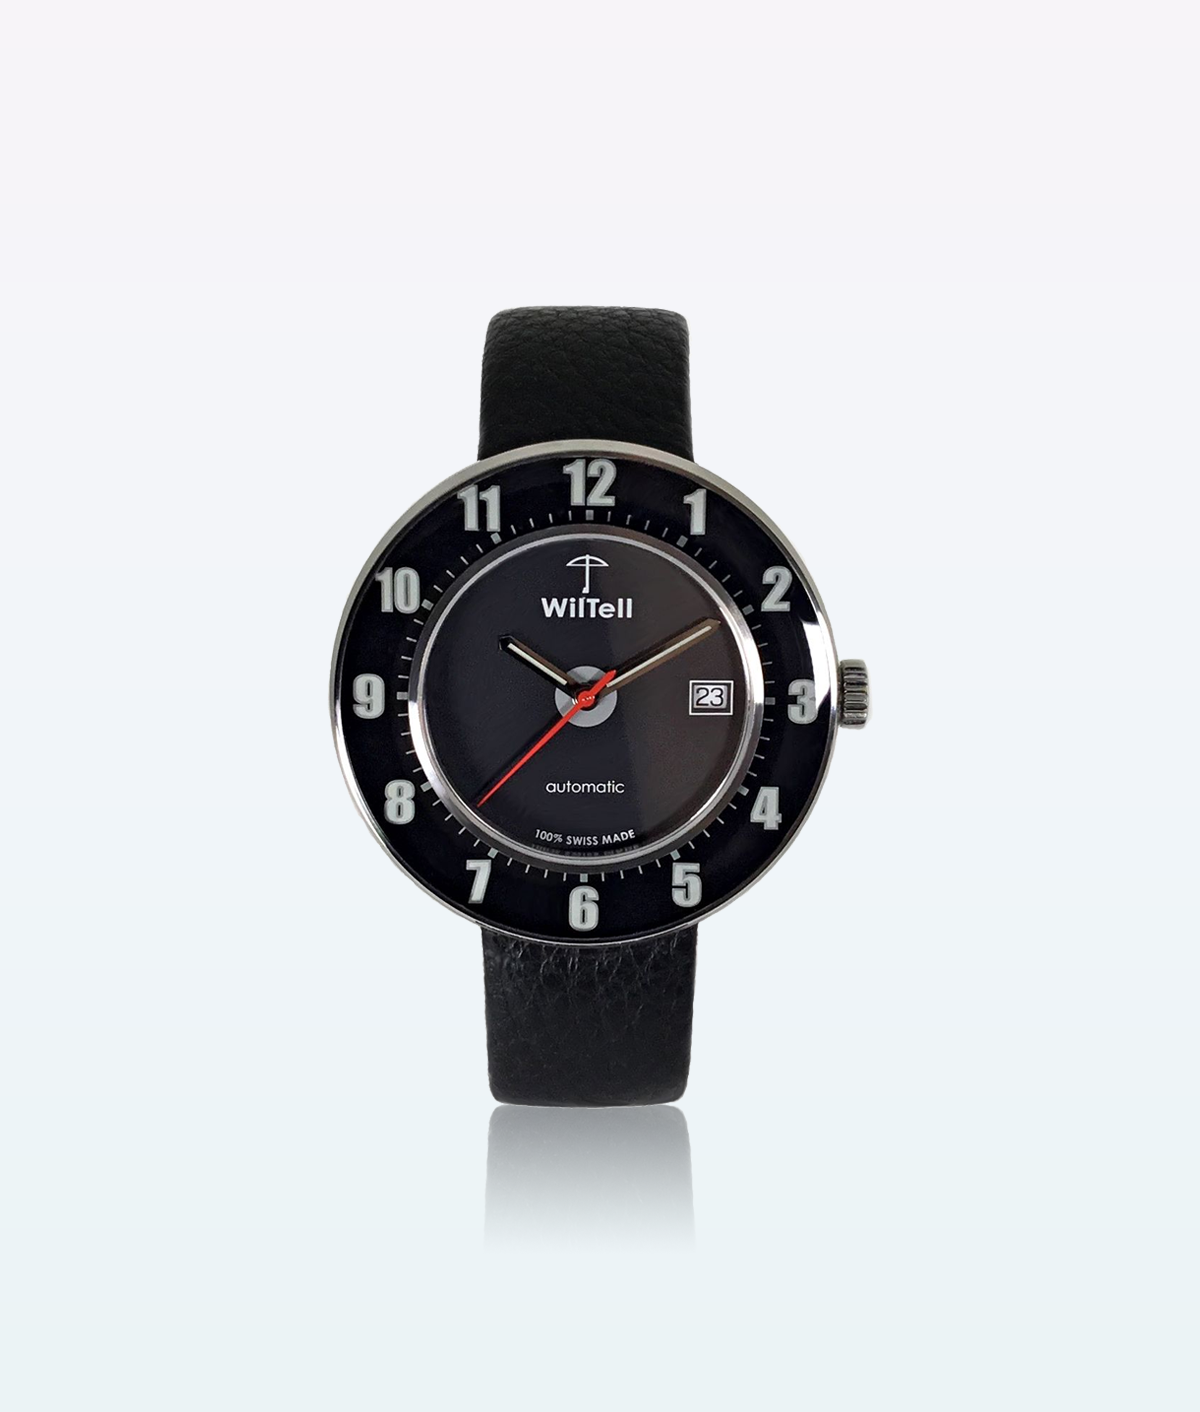 Montre-bracelet suisse WilTell 100 noire